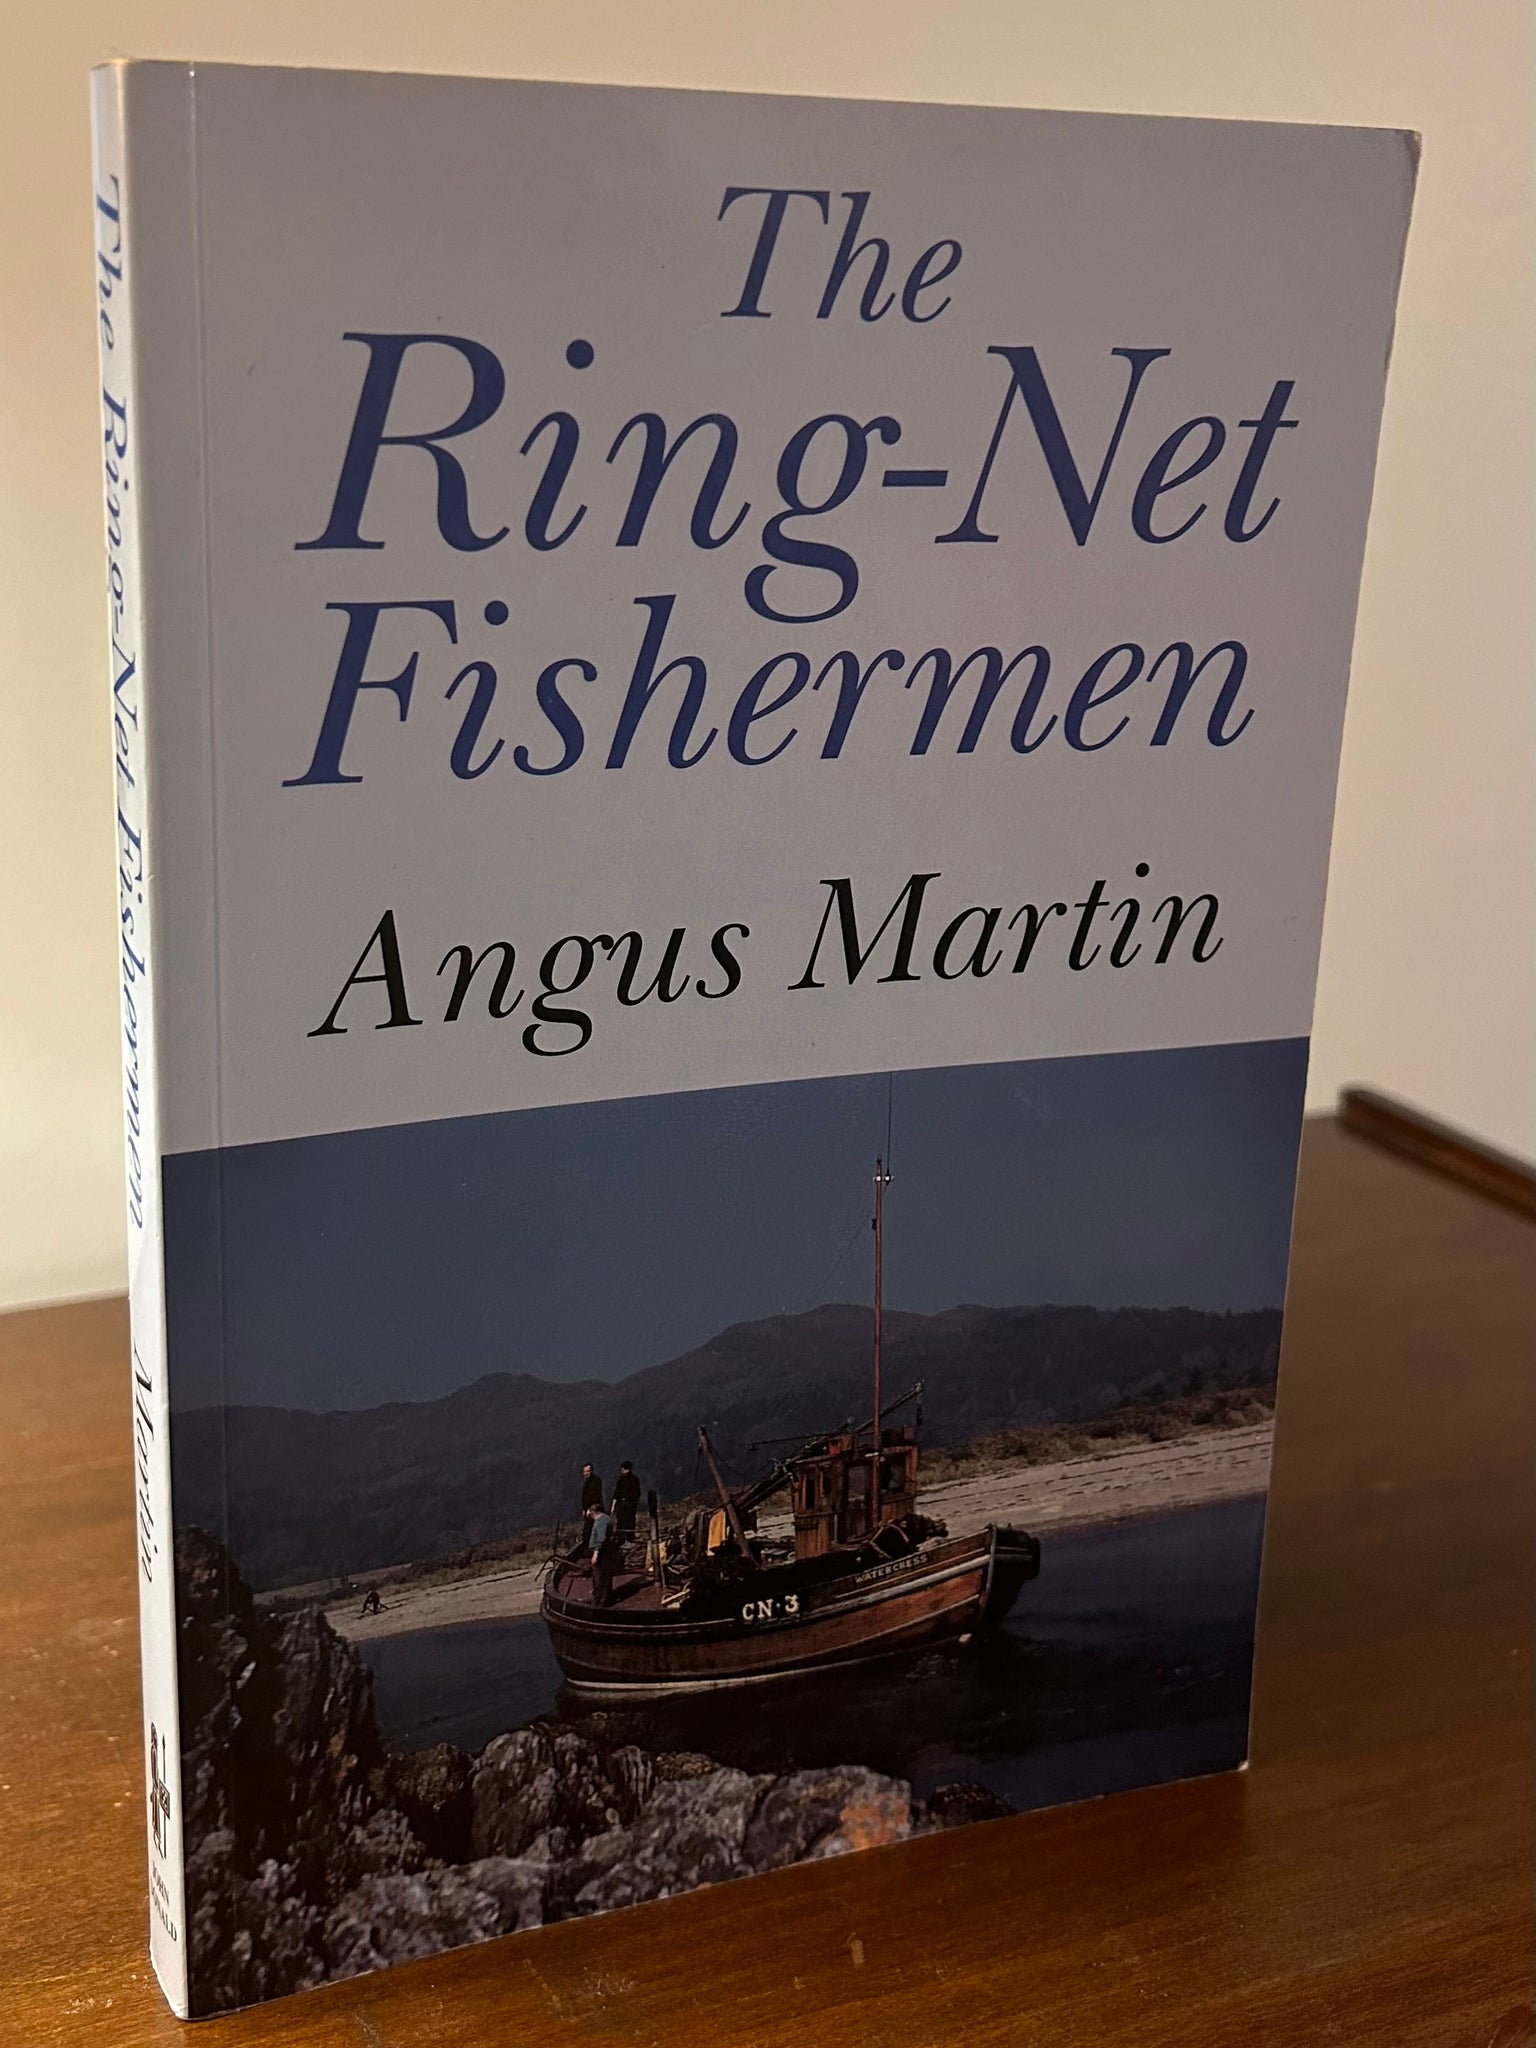 The Ring-Net Fishermen